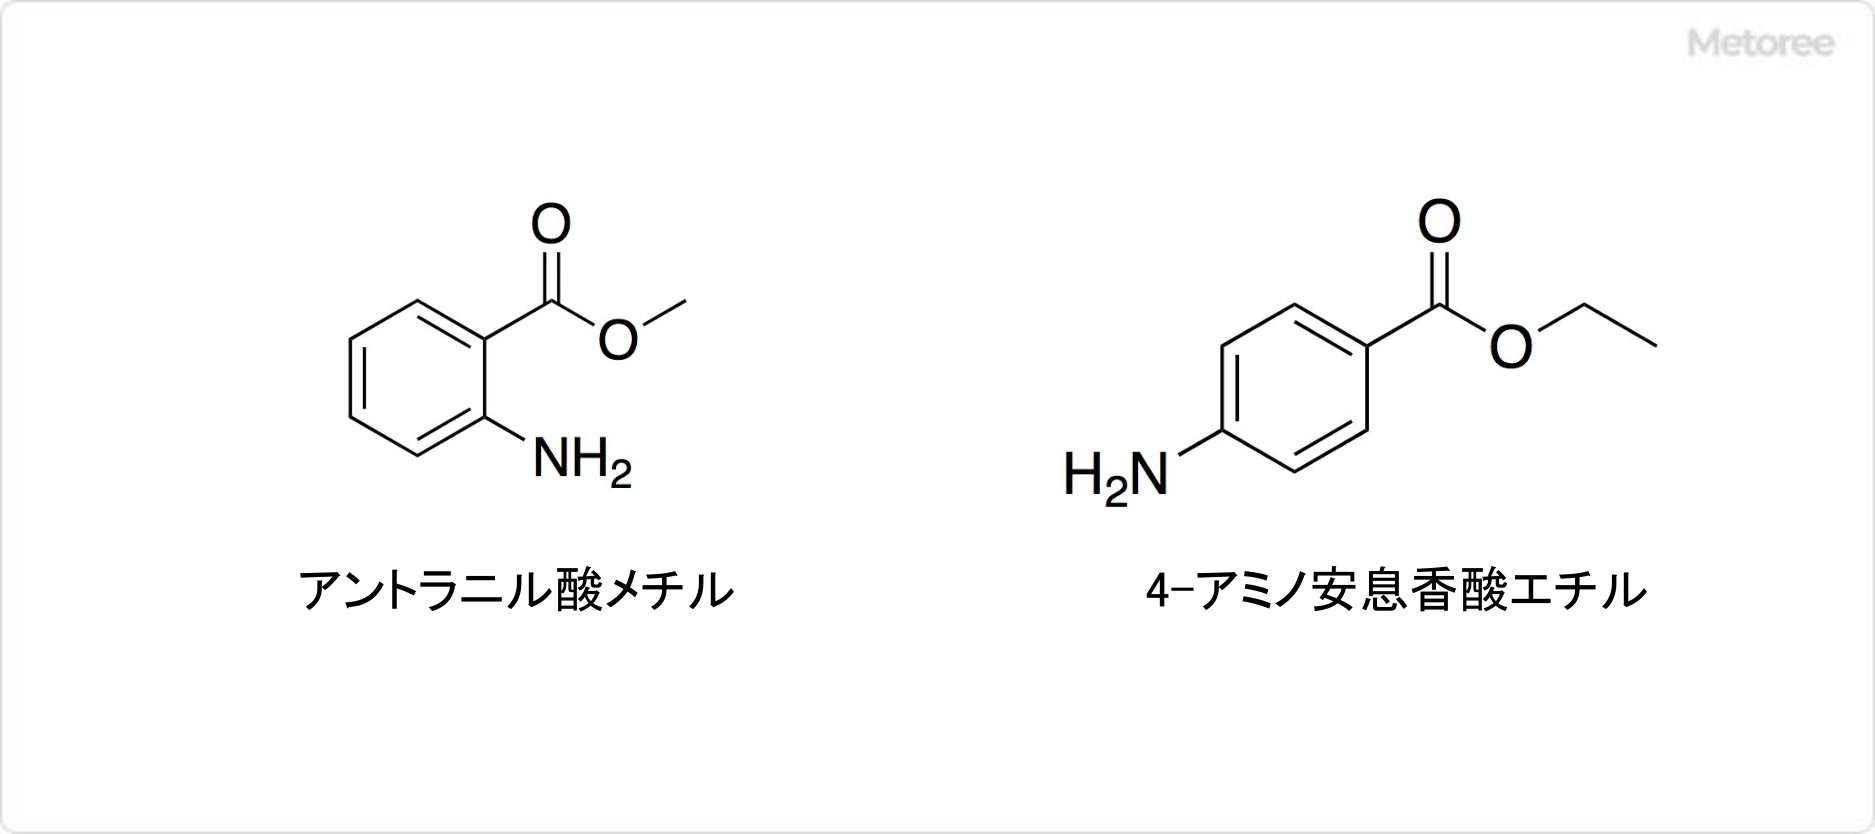 アミノ安息香酸の関連化合物